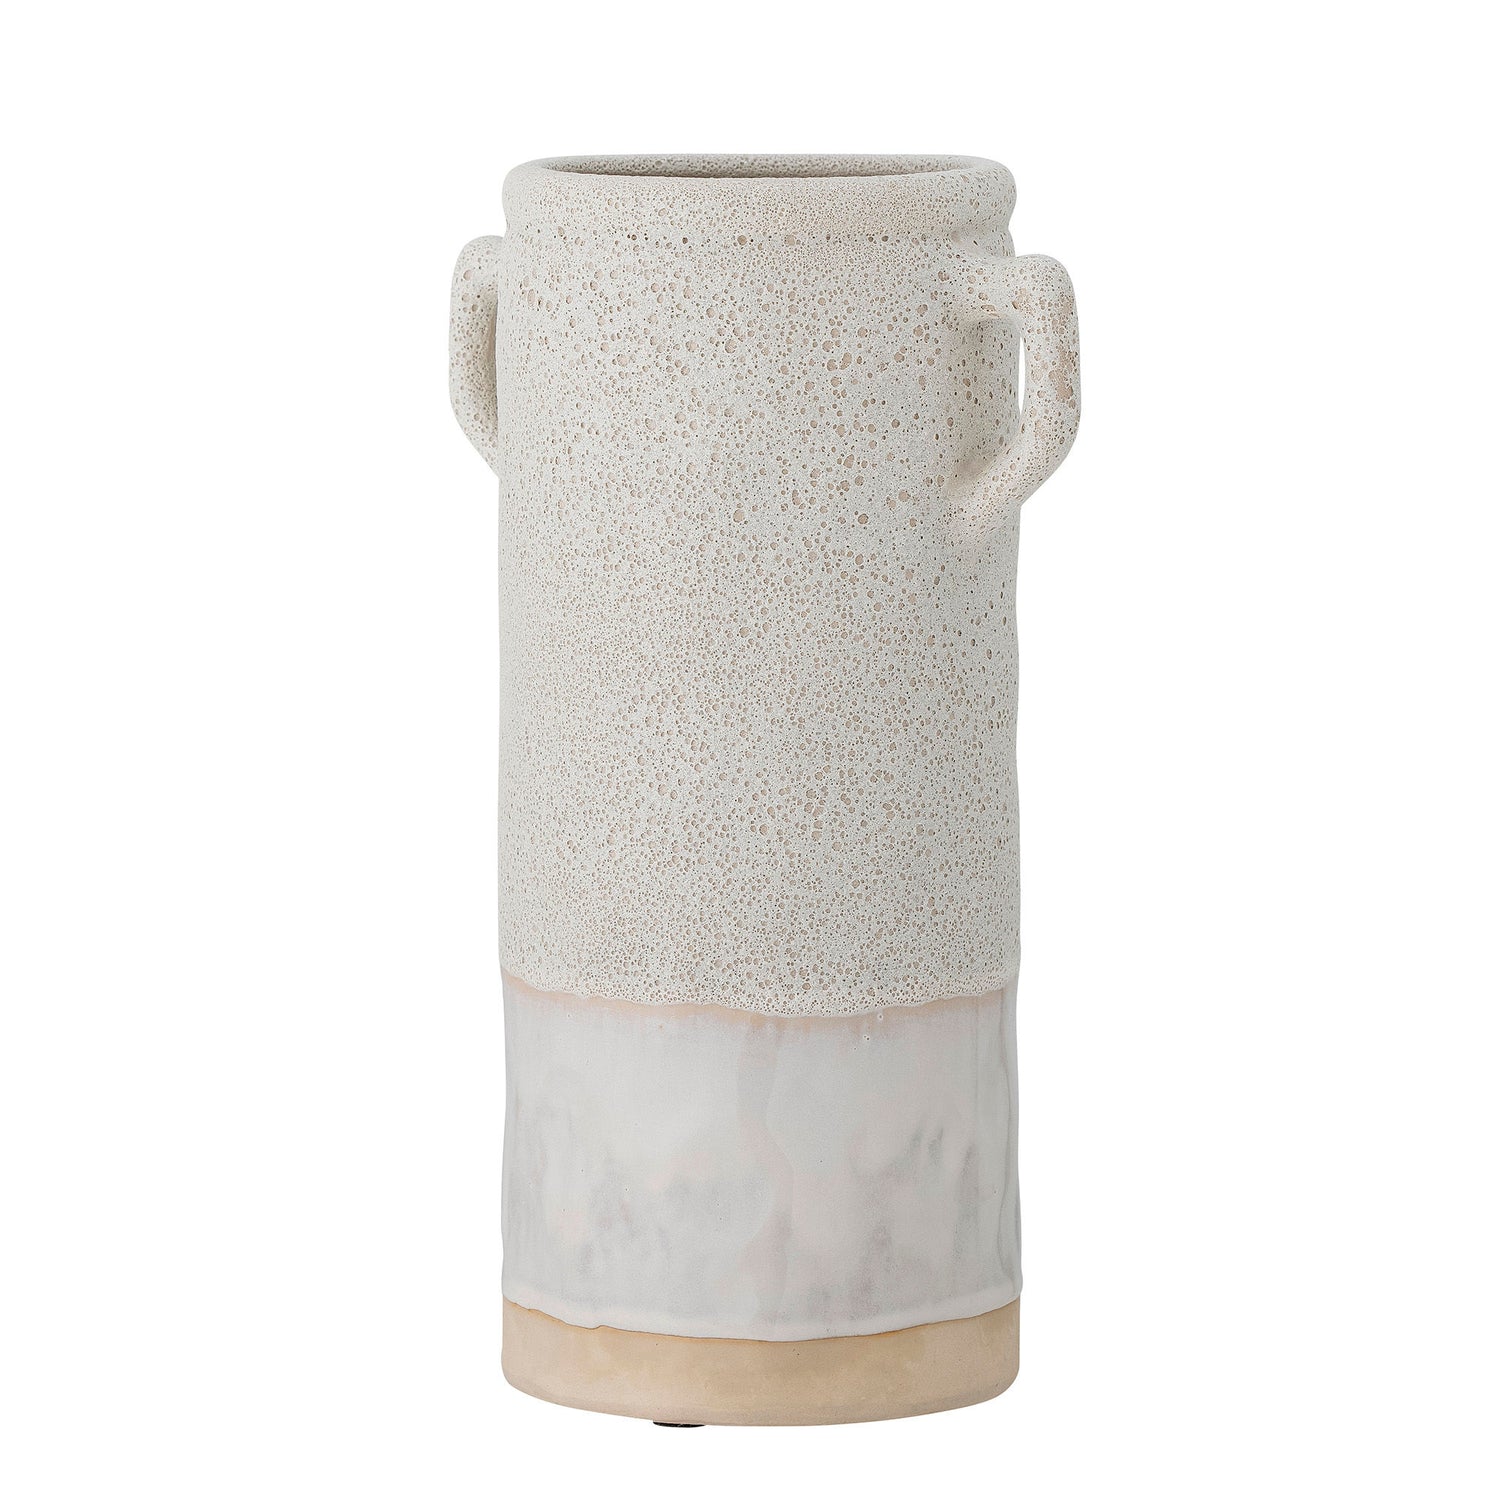 Bloomingville Tarin -maljakko, HVID, Keramik